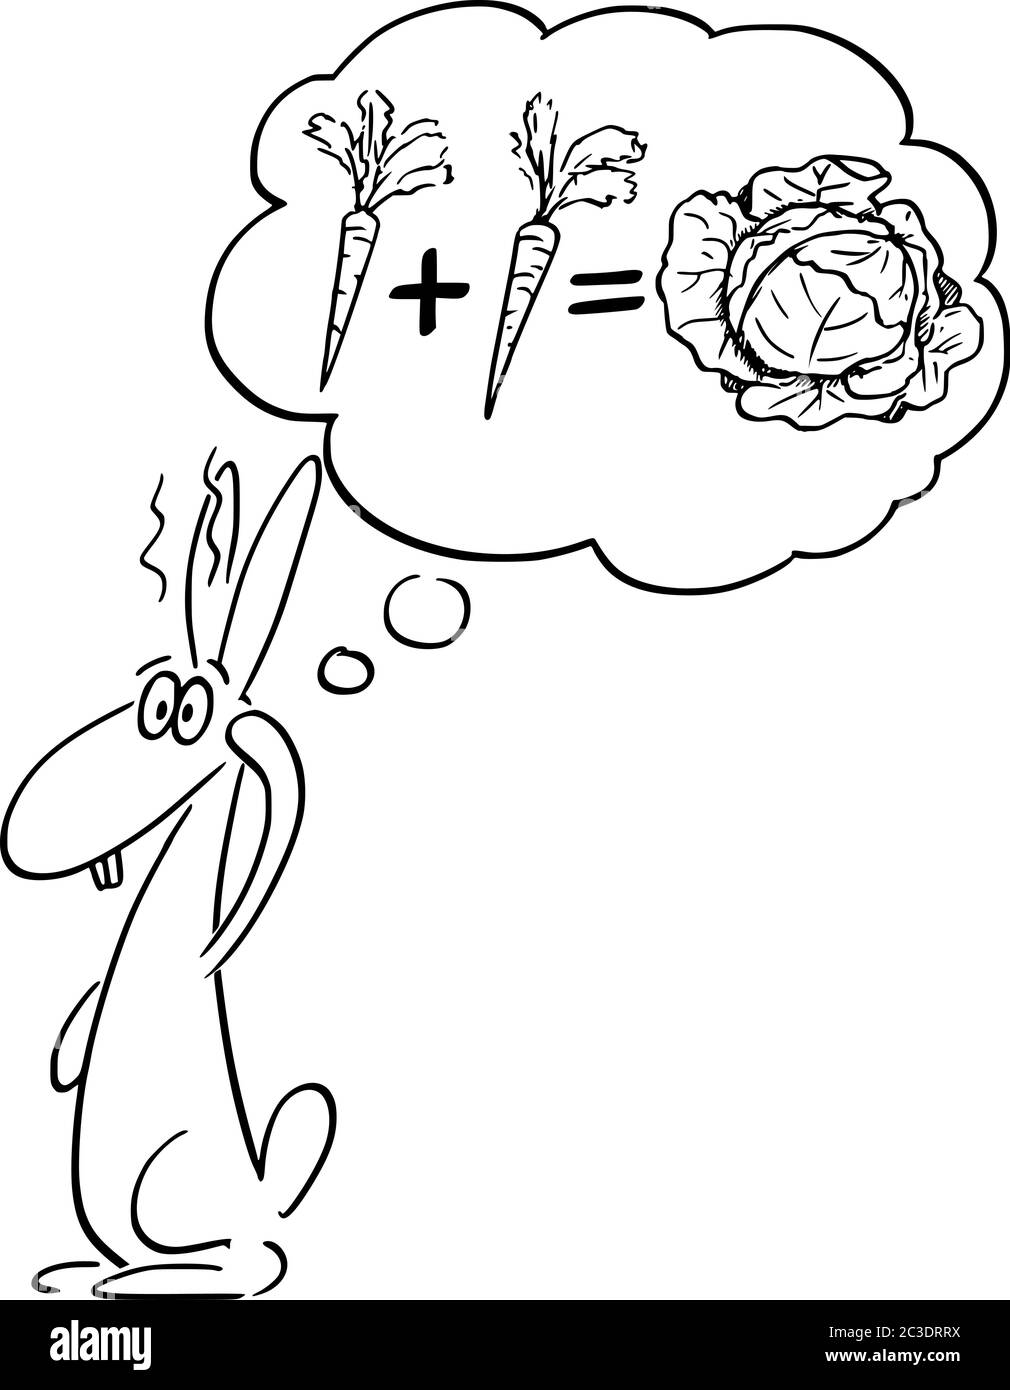 Grafico vettoriale del cartoon disegno illustrazione concettuale di coniglio, jackconiglio o lepre che pensa alla carota e alla matematica. Concetto di educazione, intelligenza e scienza. Illustrazione Vettoriale